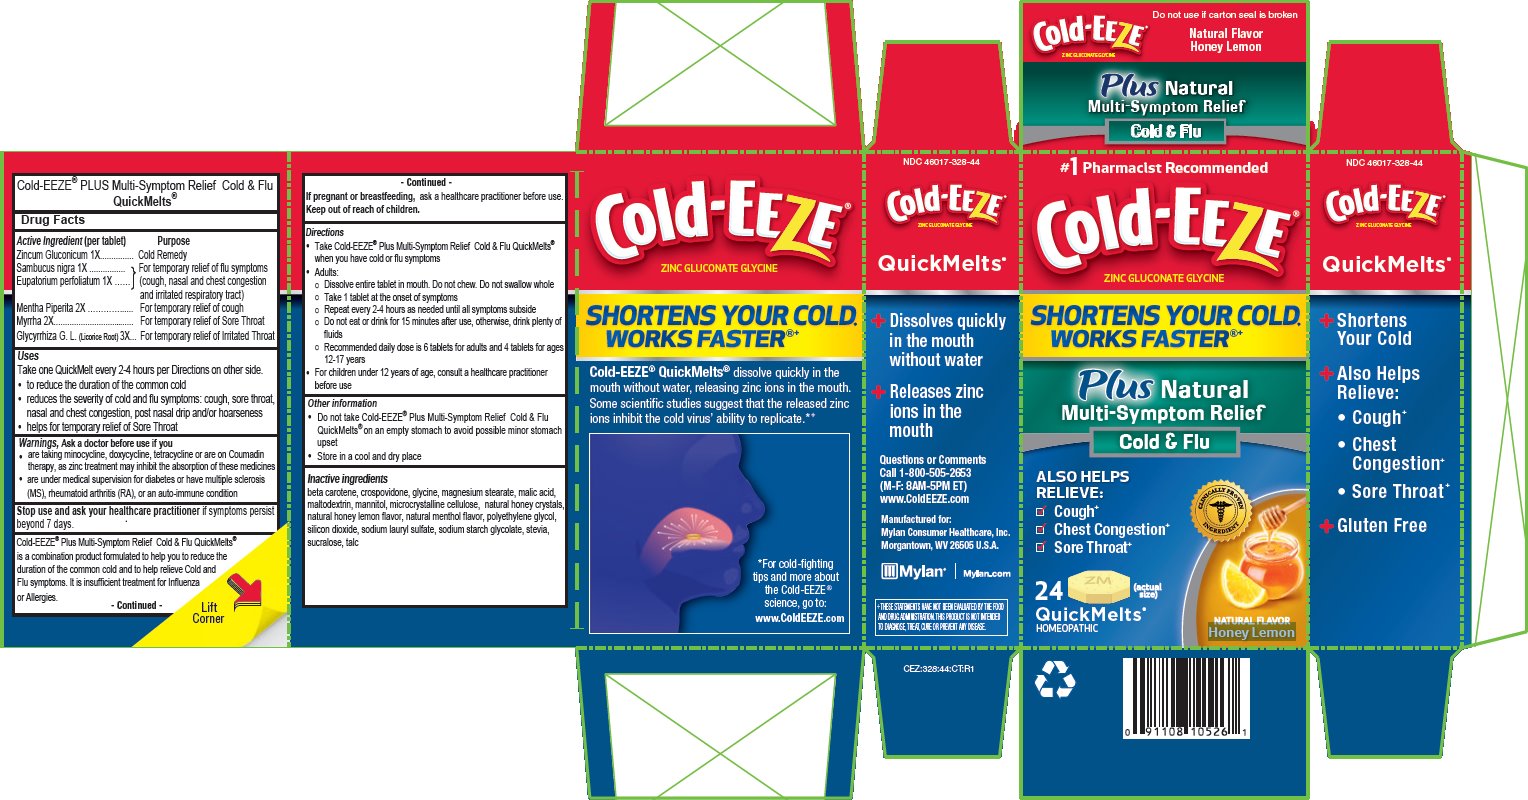 Cold-EEZE Honey Lemon QuickMelt Carton Label